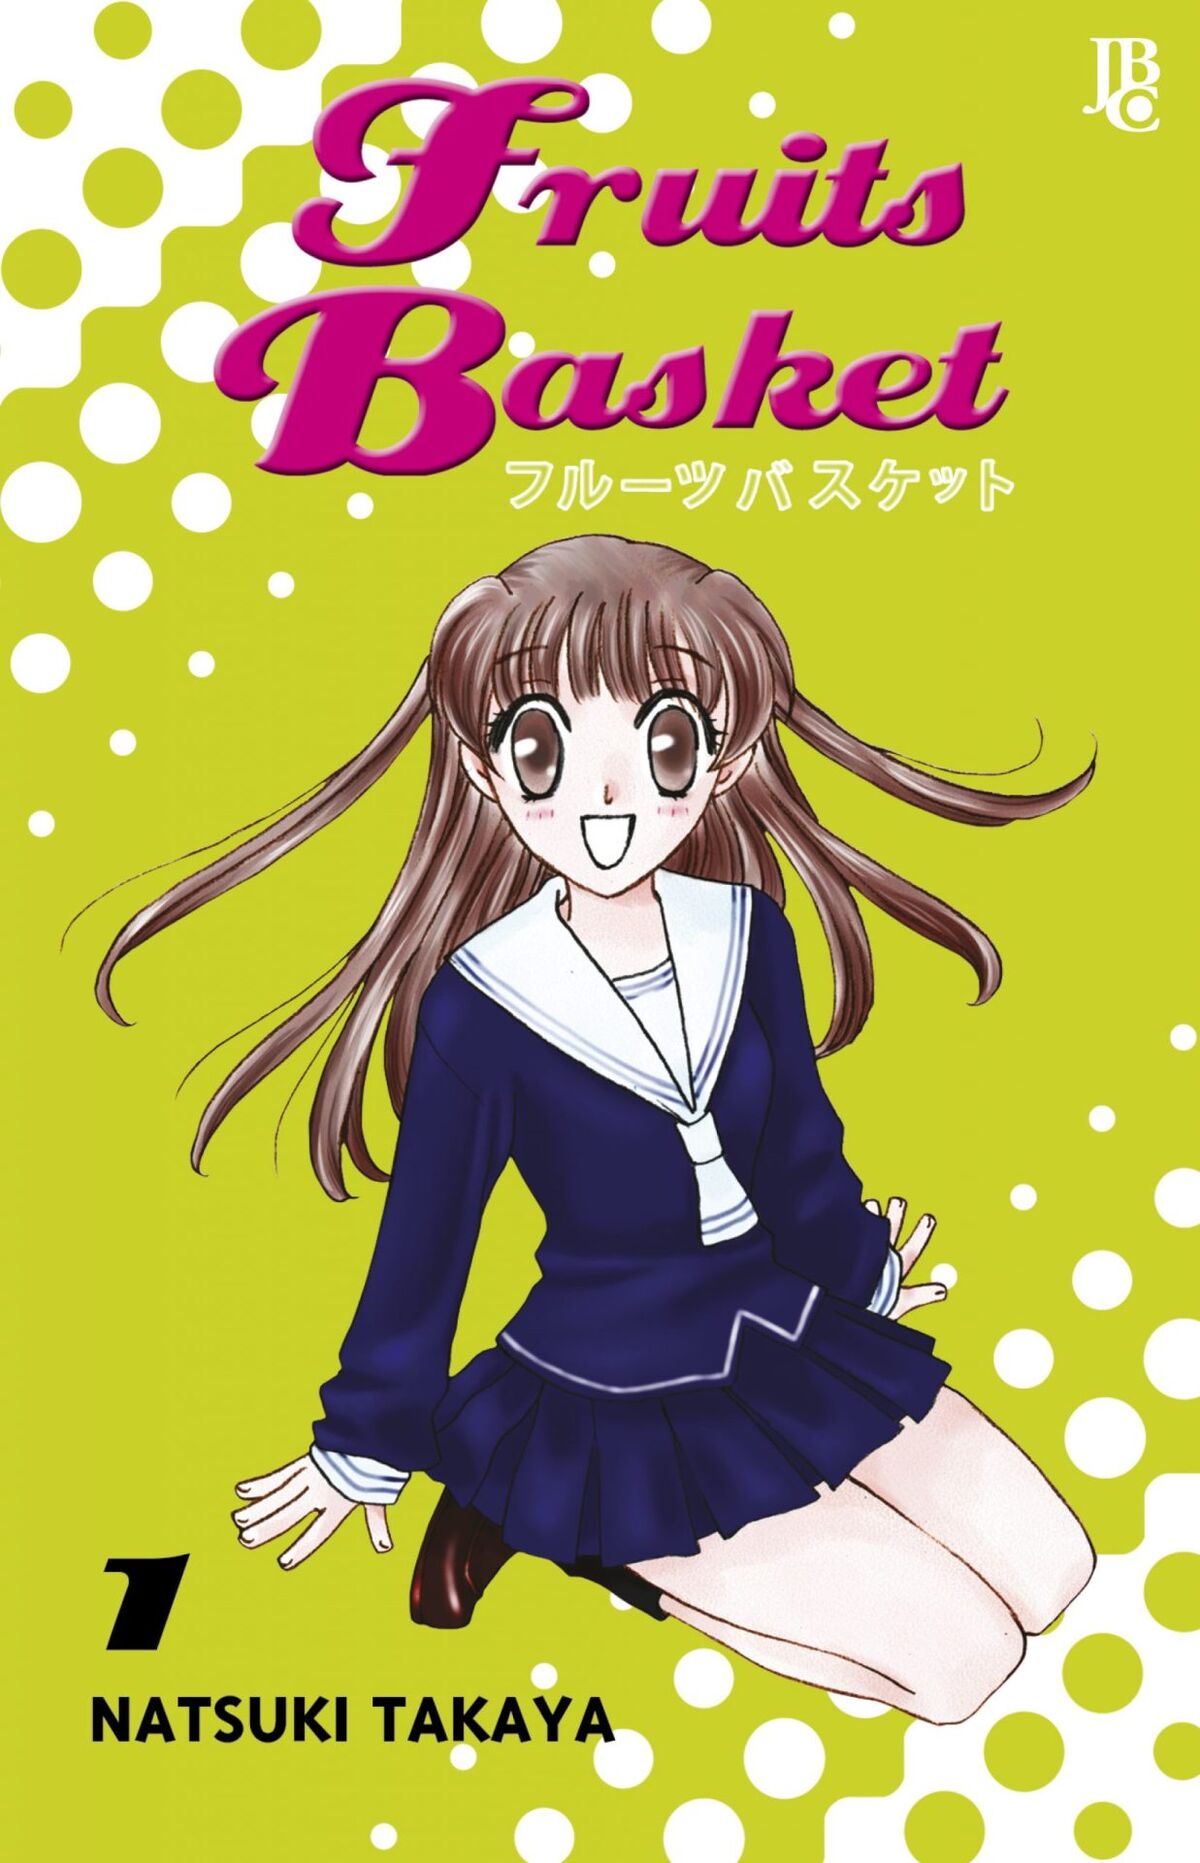 Assistir Fruits Basket 2 - Episódio 6 » Anime TV Online